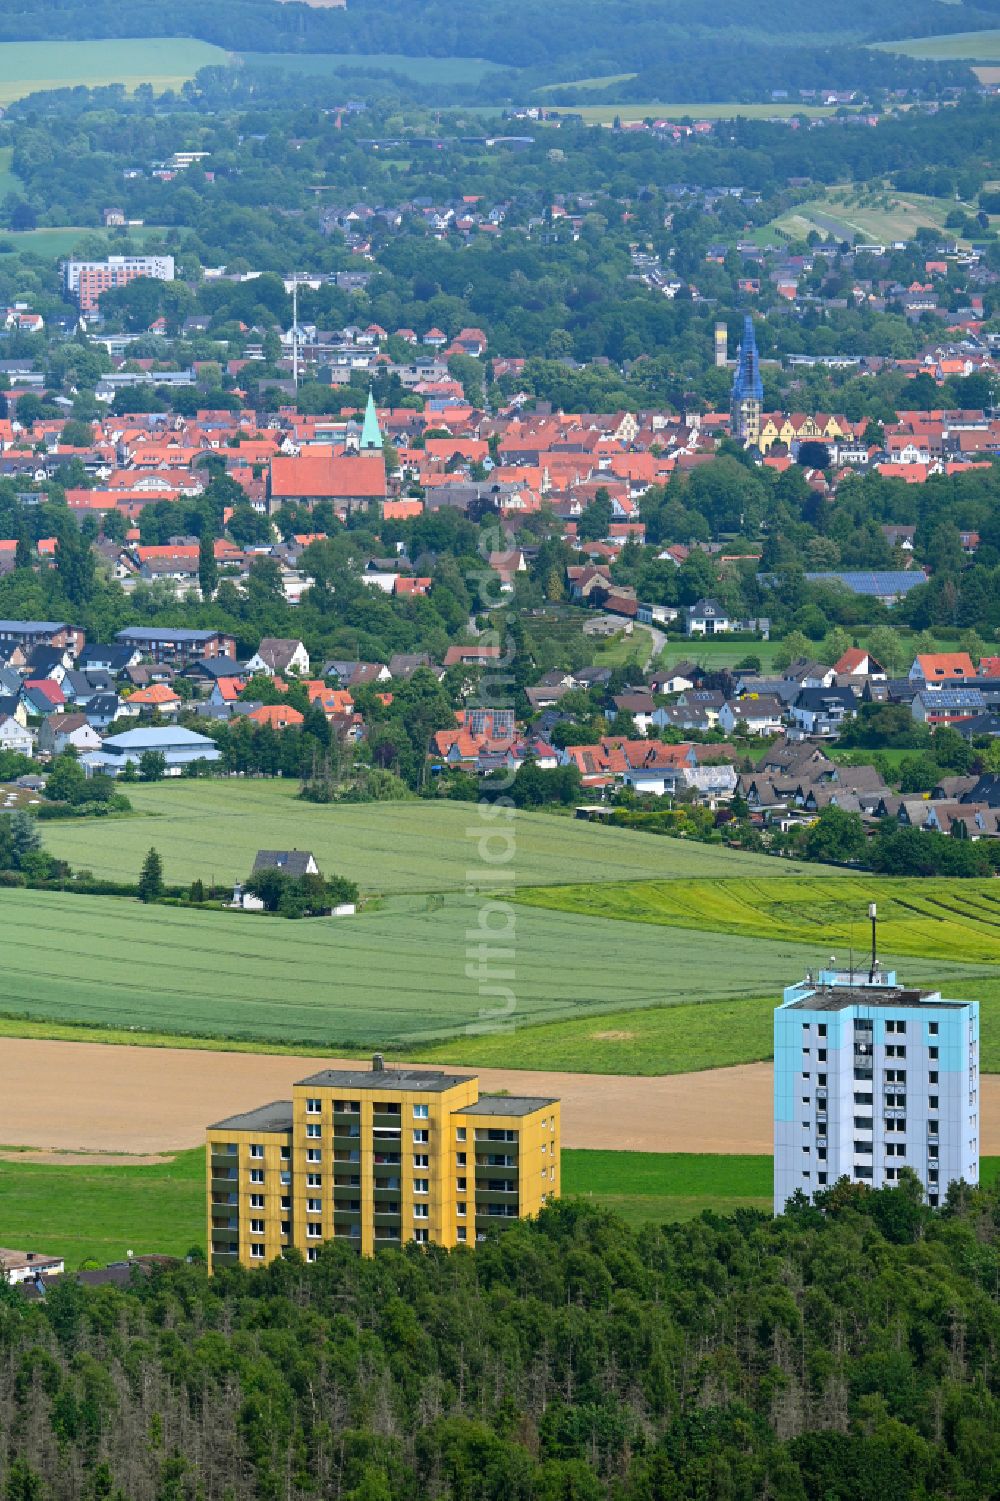 Lemgo von oben - Plattenbau- Hochhaus- Wohnsiedlung in Lemgo im Bundesland Nordrhein-Westfalen, Deutschland